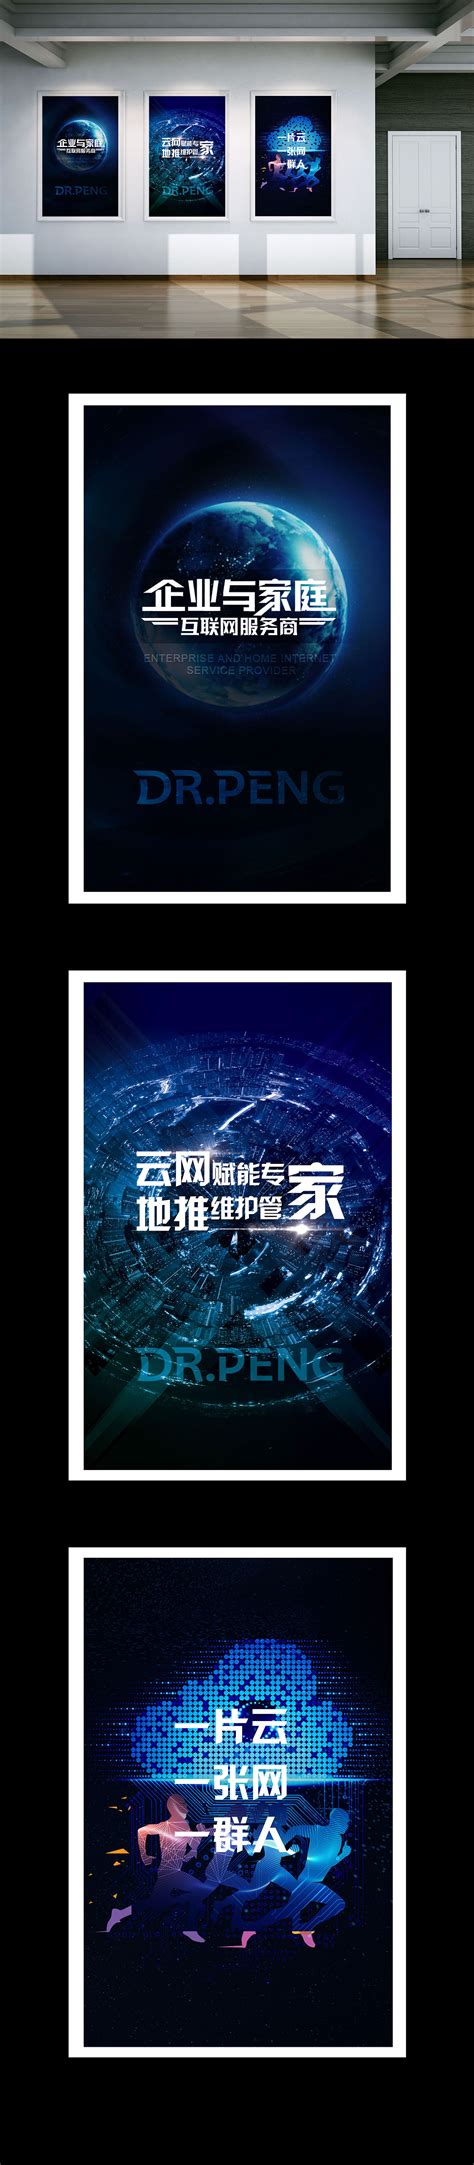 灵感迸发的20个宣传单页设计案例的讲解 - 设计学院 - Canva 中国